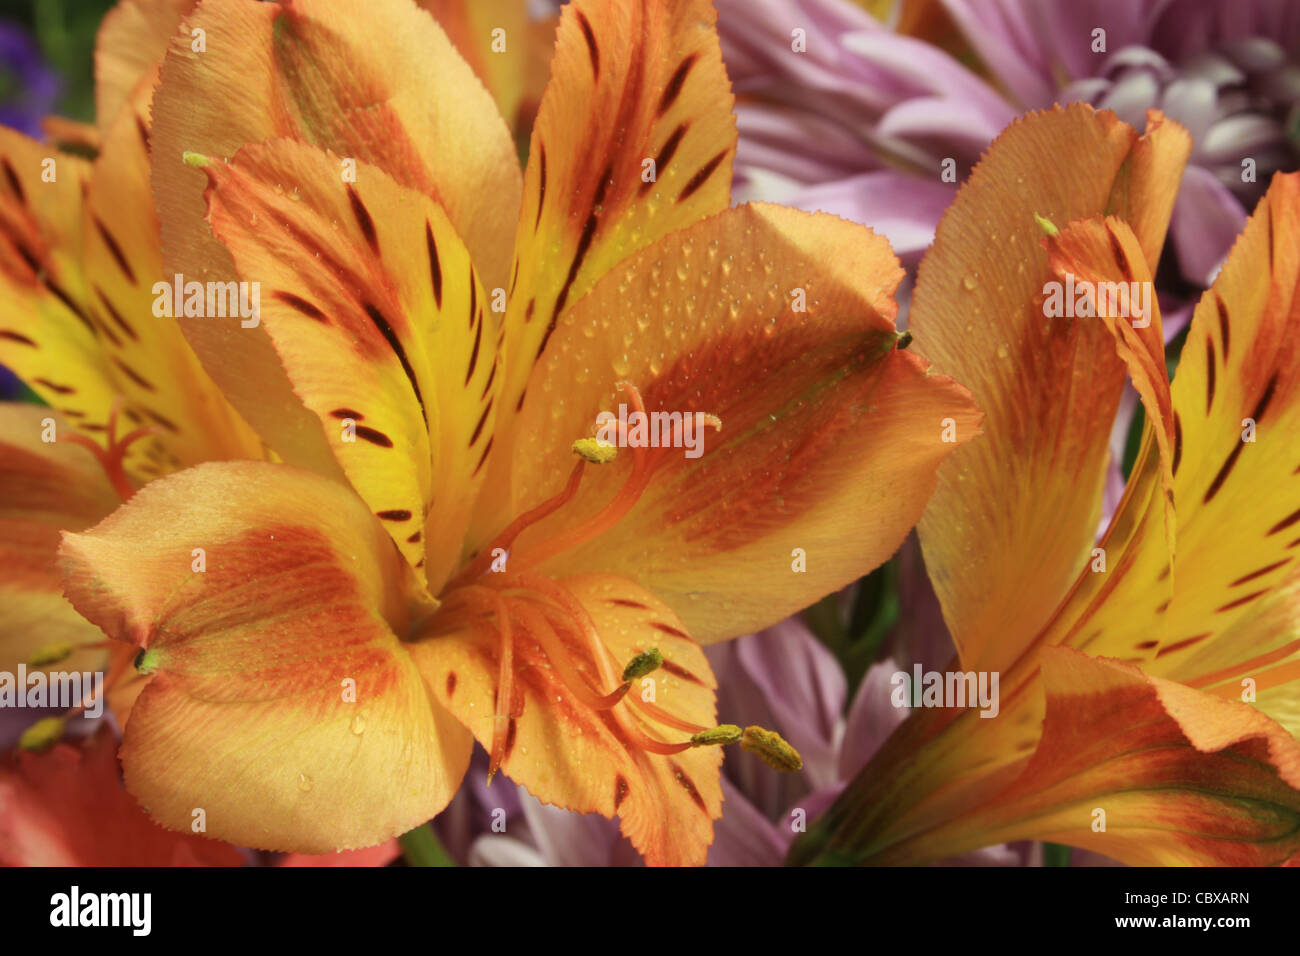 Détail de l'alstroemeria jaune et saumon ou alstremeria fleurs dans un bouquet avec des fleurs de lavande derrière Banque D'Images